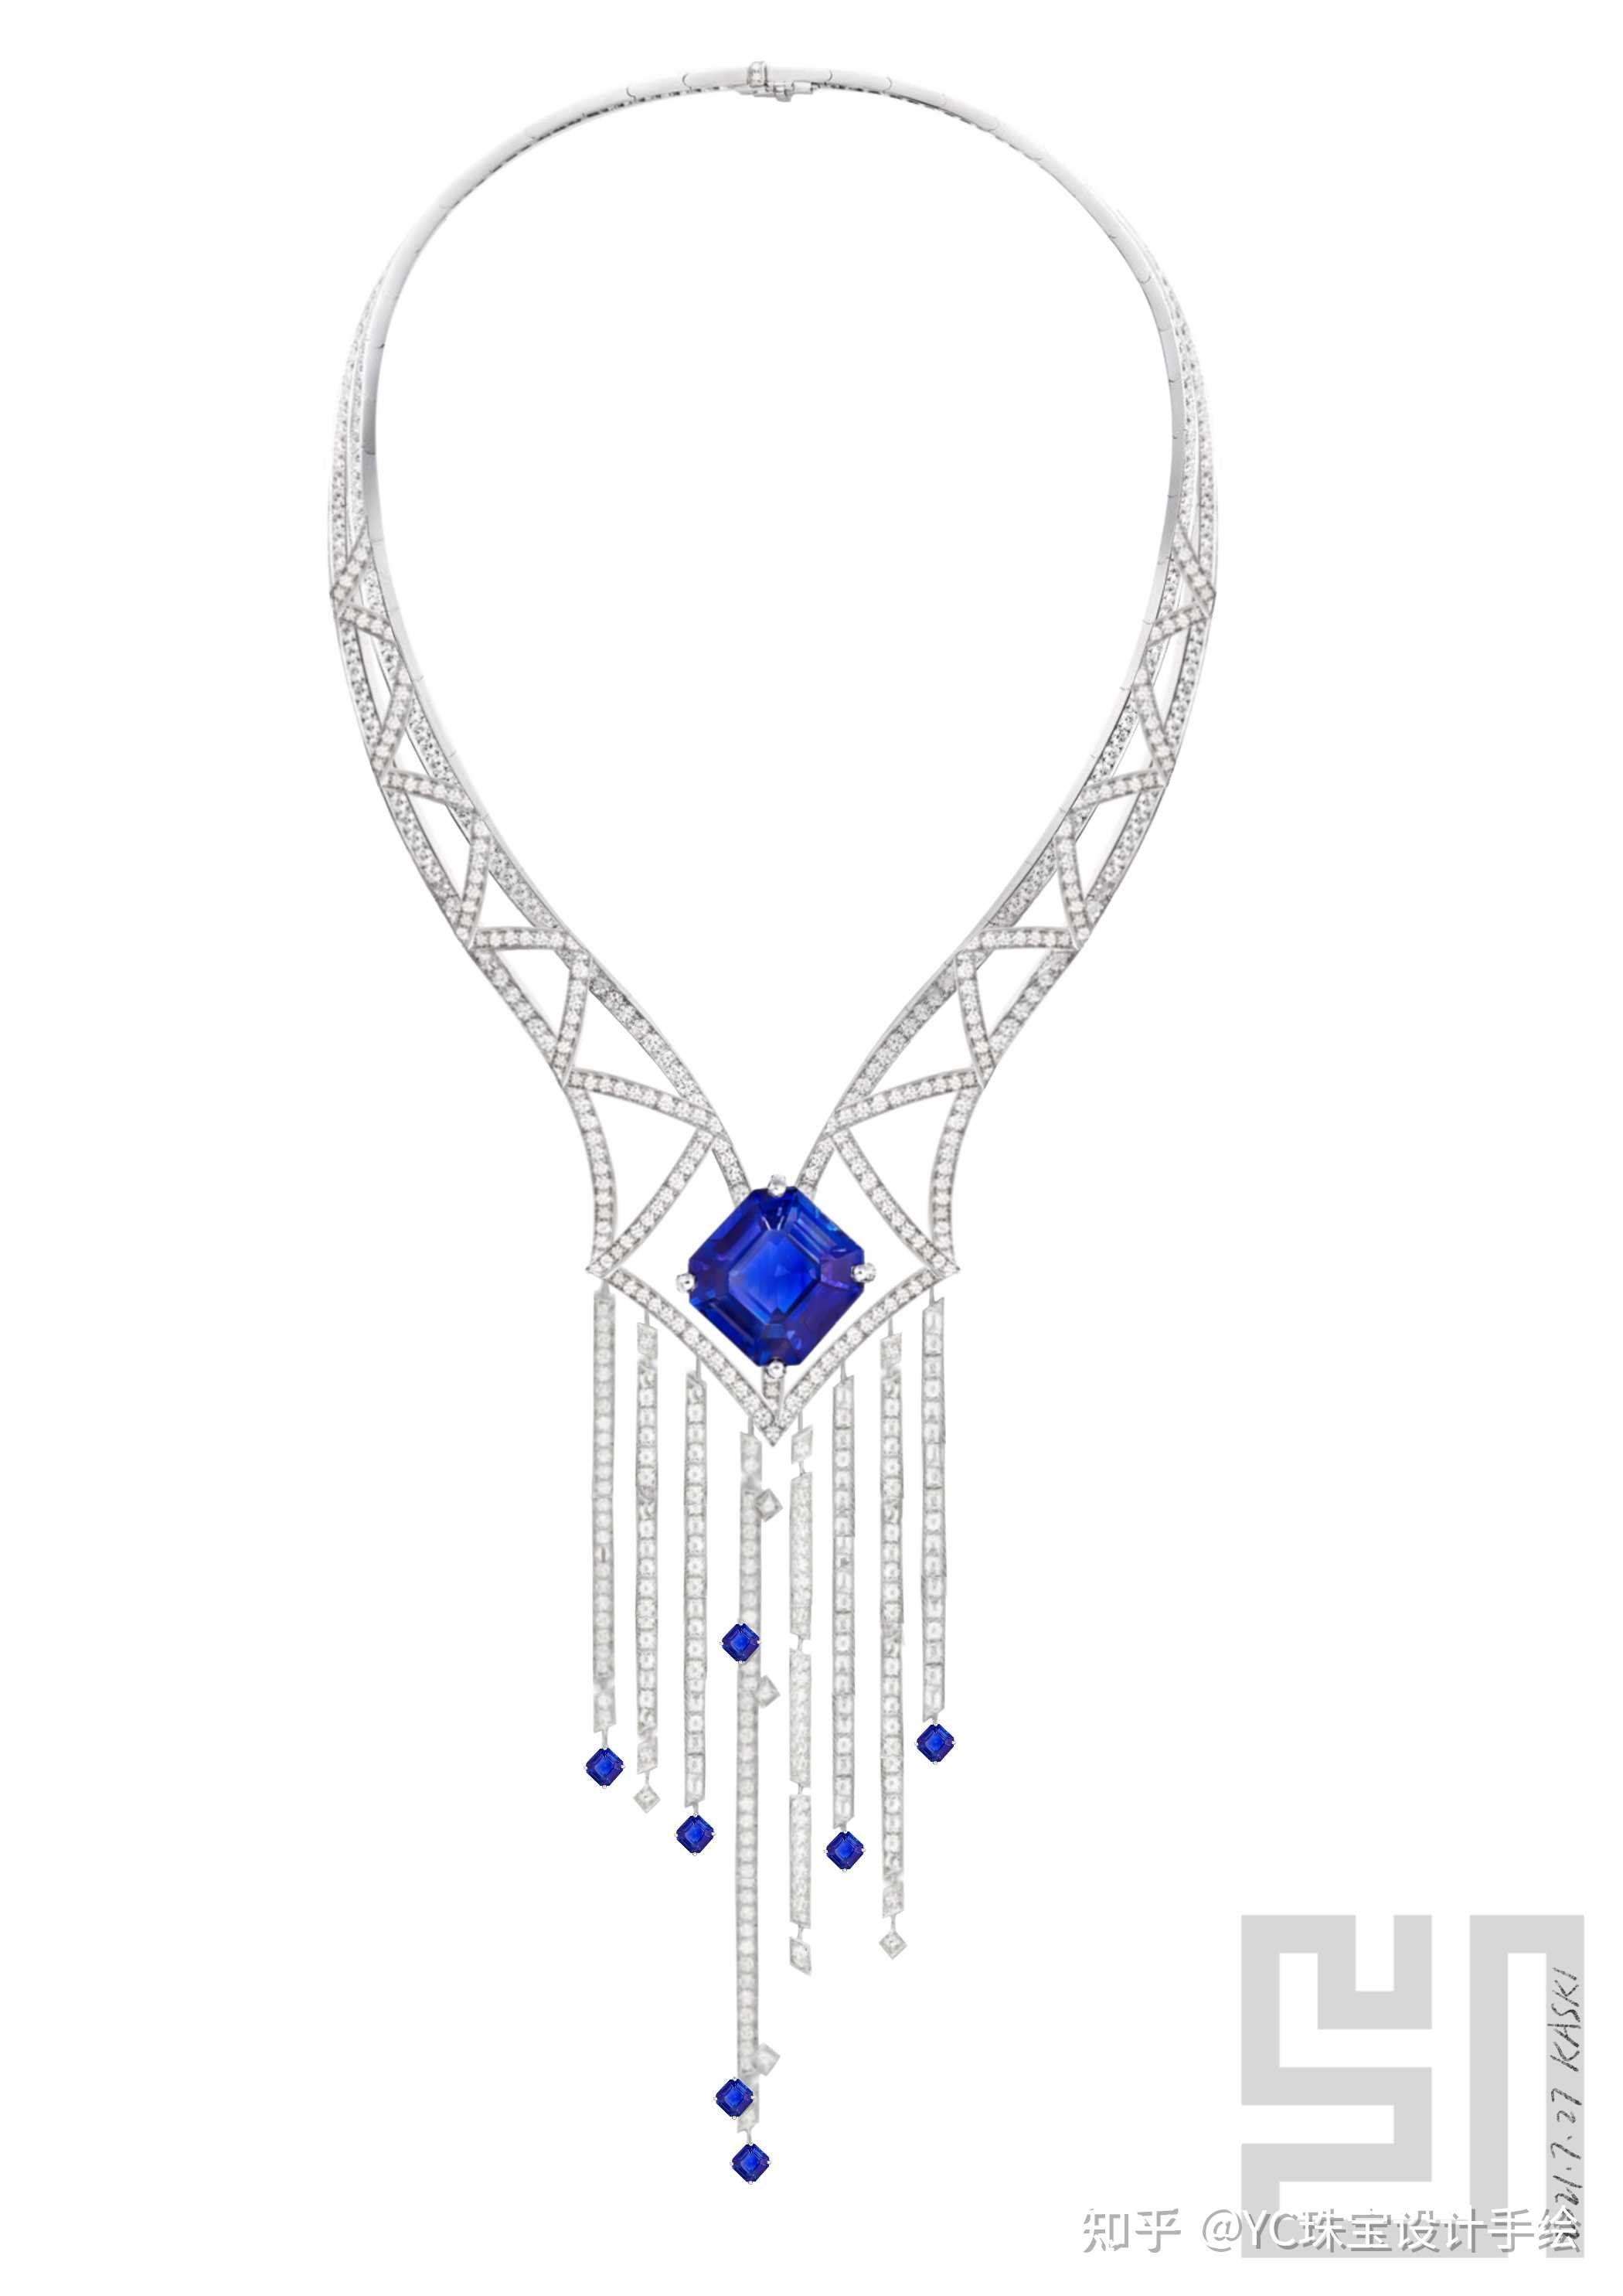 yc珠宝设计手绘 的想法: 子子海 项链设计 #珠宝设计# - 知乎